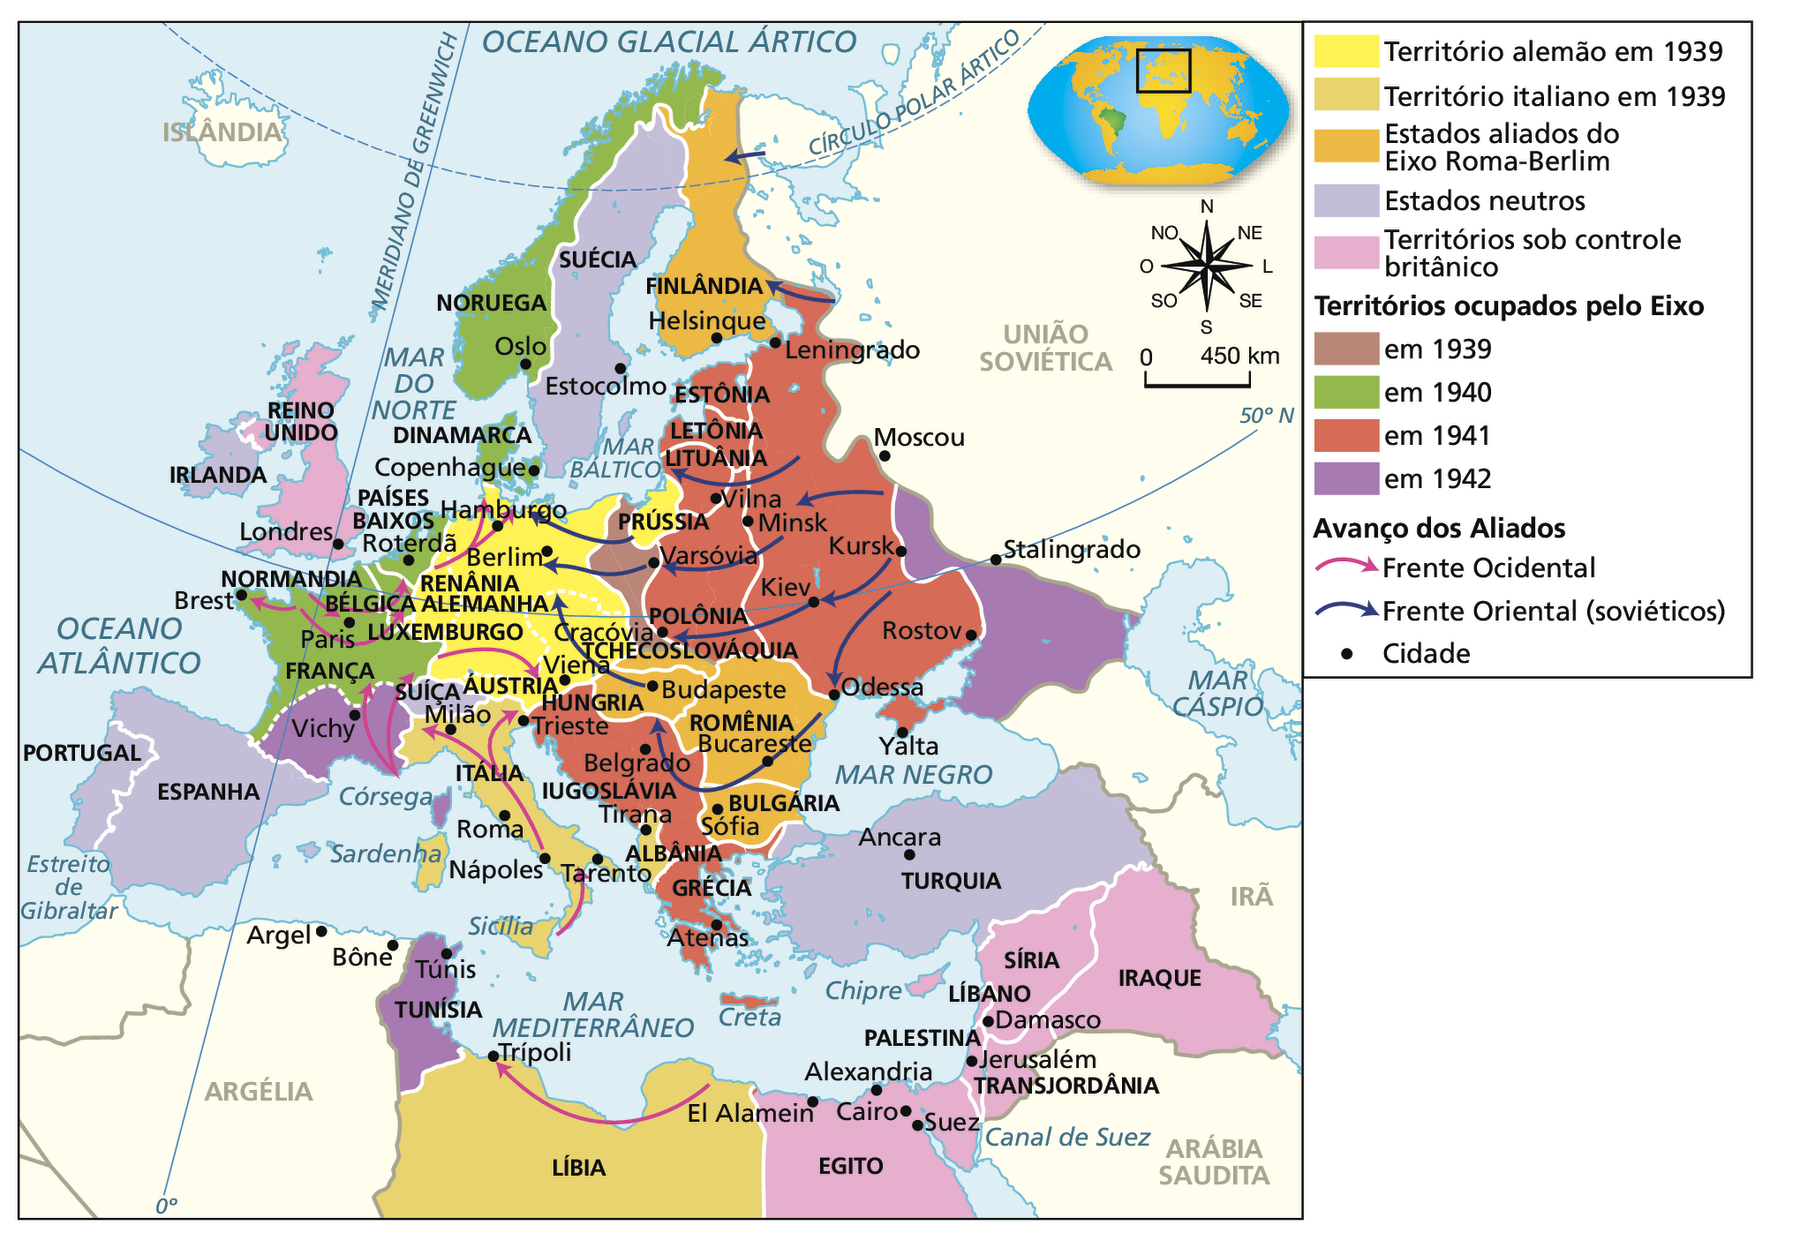 Mapa. Segunda Guerra Mundial: a luta na Europa, no Norte da África e no Oriente Médio (1939-1942). Em amarelo 'Território alemão em 1939', compreendendo a Alemanha, a Prússia (porção descontínua do território à leste) e os territórios anexados da Renânia, Áustria e parte da Tchecoslováquia. Em bege, 'Território italiano em 1939', compreendendo a Itália e a Albânia, no continente europeu, e a Líbia, na África. Em laranja, 'Estados aliados do Eixo Roma-Berlim', compreendendo Finlândia, Tchecoslováquia, Romênia, Hungria e Bulgária. Em lilás, 'Estados neutros', compreendendo Portugal, Espanha, Suíça, Irlanda, Suécia e Turquia. Em rosa, 'Territórios sob controle britânico', compreendendo o Reino Unido, na Europa; o Egito, na África; e Palestina, Transjordânia, Líbano, Síria e Iraque, no Oriente Médio. Em marrom, 'Territórios ocupados pelo Eixo em 1939', compreendendo parte da Polônia. Em verde, 'Territórios ocupados pelo Eixo em 1940', compreendendo Noruega, Dinamarca, Países Baixos, Bélgica e a maior parte da França. Em vermelho, 'Territórios ocupados pelo Eixo em 1941', compreendendo Iugoslávia, Grécia, Polônia, Lituânia, Letônia, Estônia e parte do oeste da União Soviética, aproximando-se da cidade de Moscou. Em roxo,'Territórios ocupados pelo Eixo em 1942', compreendendo o sul da França, na Europa; a Tunísia, na África; e parte da União Soviética à leste da área conquistada em 1941, aproximando-se da cidade de Stalingrado. Uma seta rosa indica 'Avanço dos Aliados', pela 'Frente Ocidental', partindo da região da Normandia, na França, em direção às cidades francesas de Brest e Paris, a Roterdã, nos Países Baixos e a Hamburgo, na Alemanha, e da costa do Mar Mediterrâneo em direção à França, incluindo a cidade de Vichy, à Áustria e à Itália, incluindo as cidades de Tarento, Nápoles, Milão e Trieste. No continente africano, os aliados também avançam pela frente ocidental em direção à cidade de Trípoli, na Líbia. Uma seta roxa indica 'Avanço dos Aliados', pela 'Frente Oriental (soviéticos)', partindo do interior da União Soviética, em direção às cidades soviéticas de Kursk, Odessa, Kiev e Minsk, ocupadas pelo Eixo em 1941, avançando para a Finlândia, a Lituânia, a Prússia, a Polônia, incluindo as cidades de Varsóvia e Cracóvia, a Romênia, incluindo a cidade de Bucareste, a Iugoslávia, a Hungria, incluindo a cidade de Budapeste, e a Alemanha, incluindo a cidade de Berlim. No canto superior direito, rosa dos ventos e escala de 0 a 450 quilômetros.